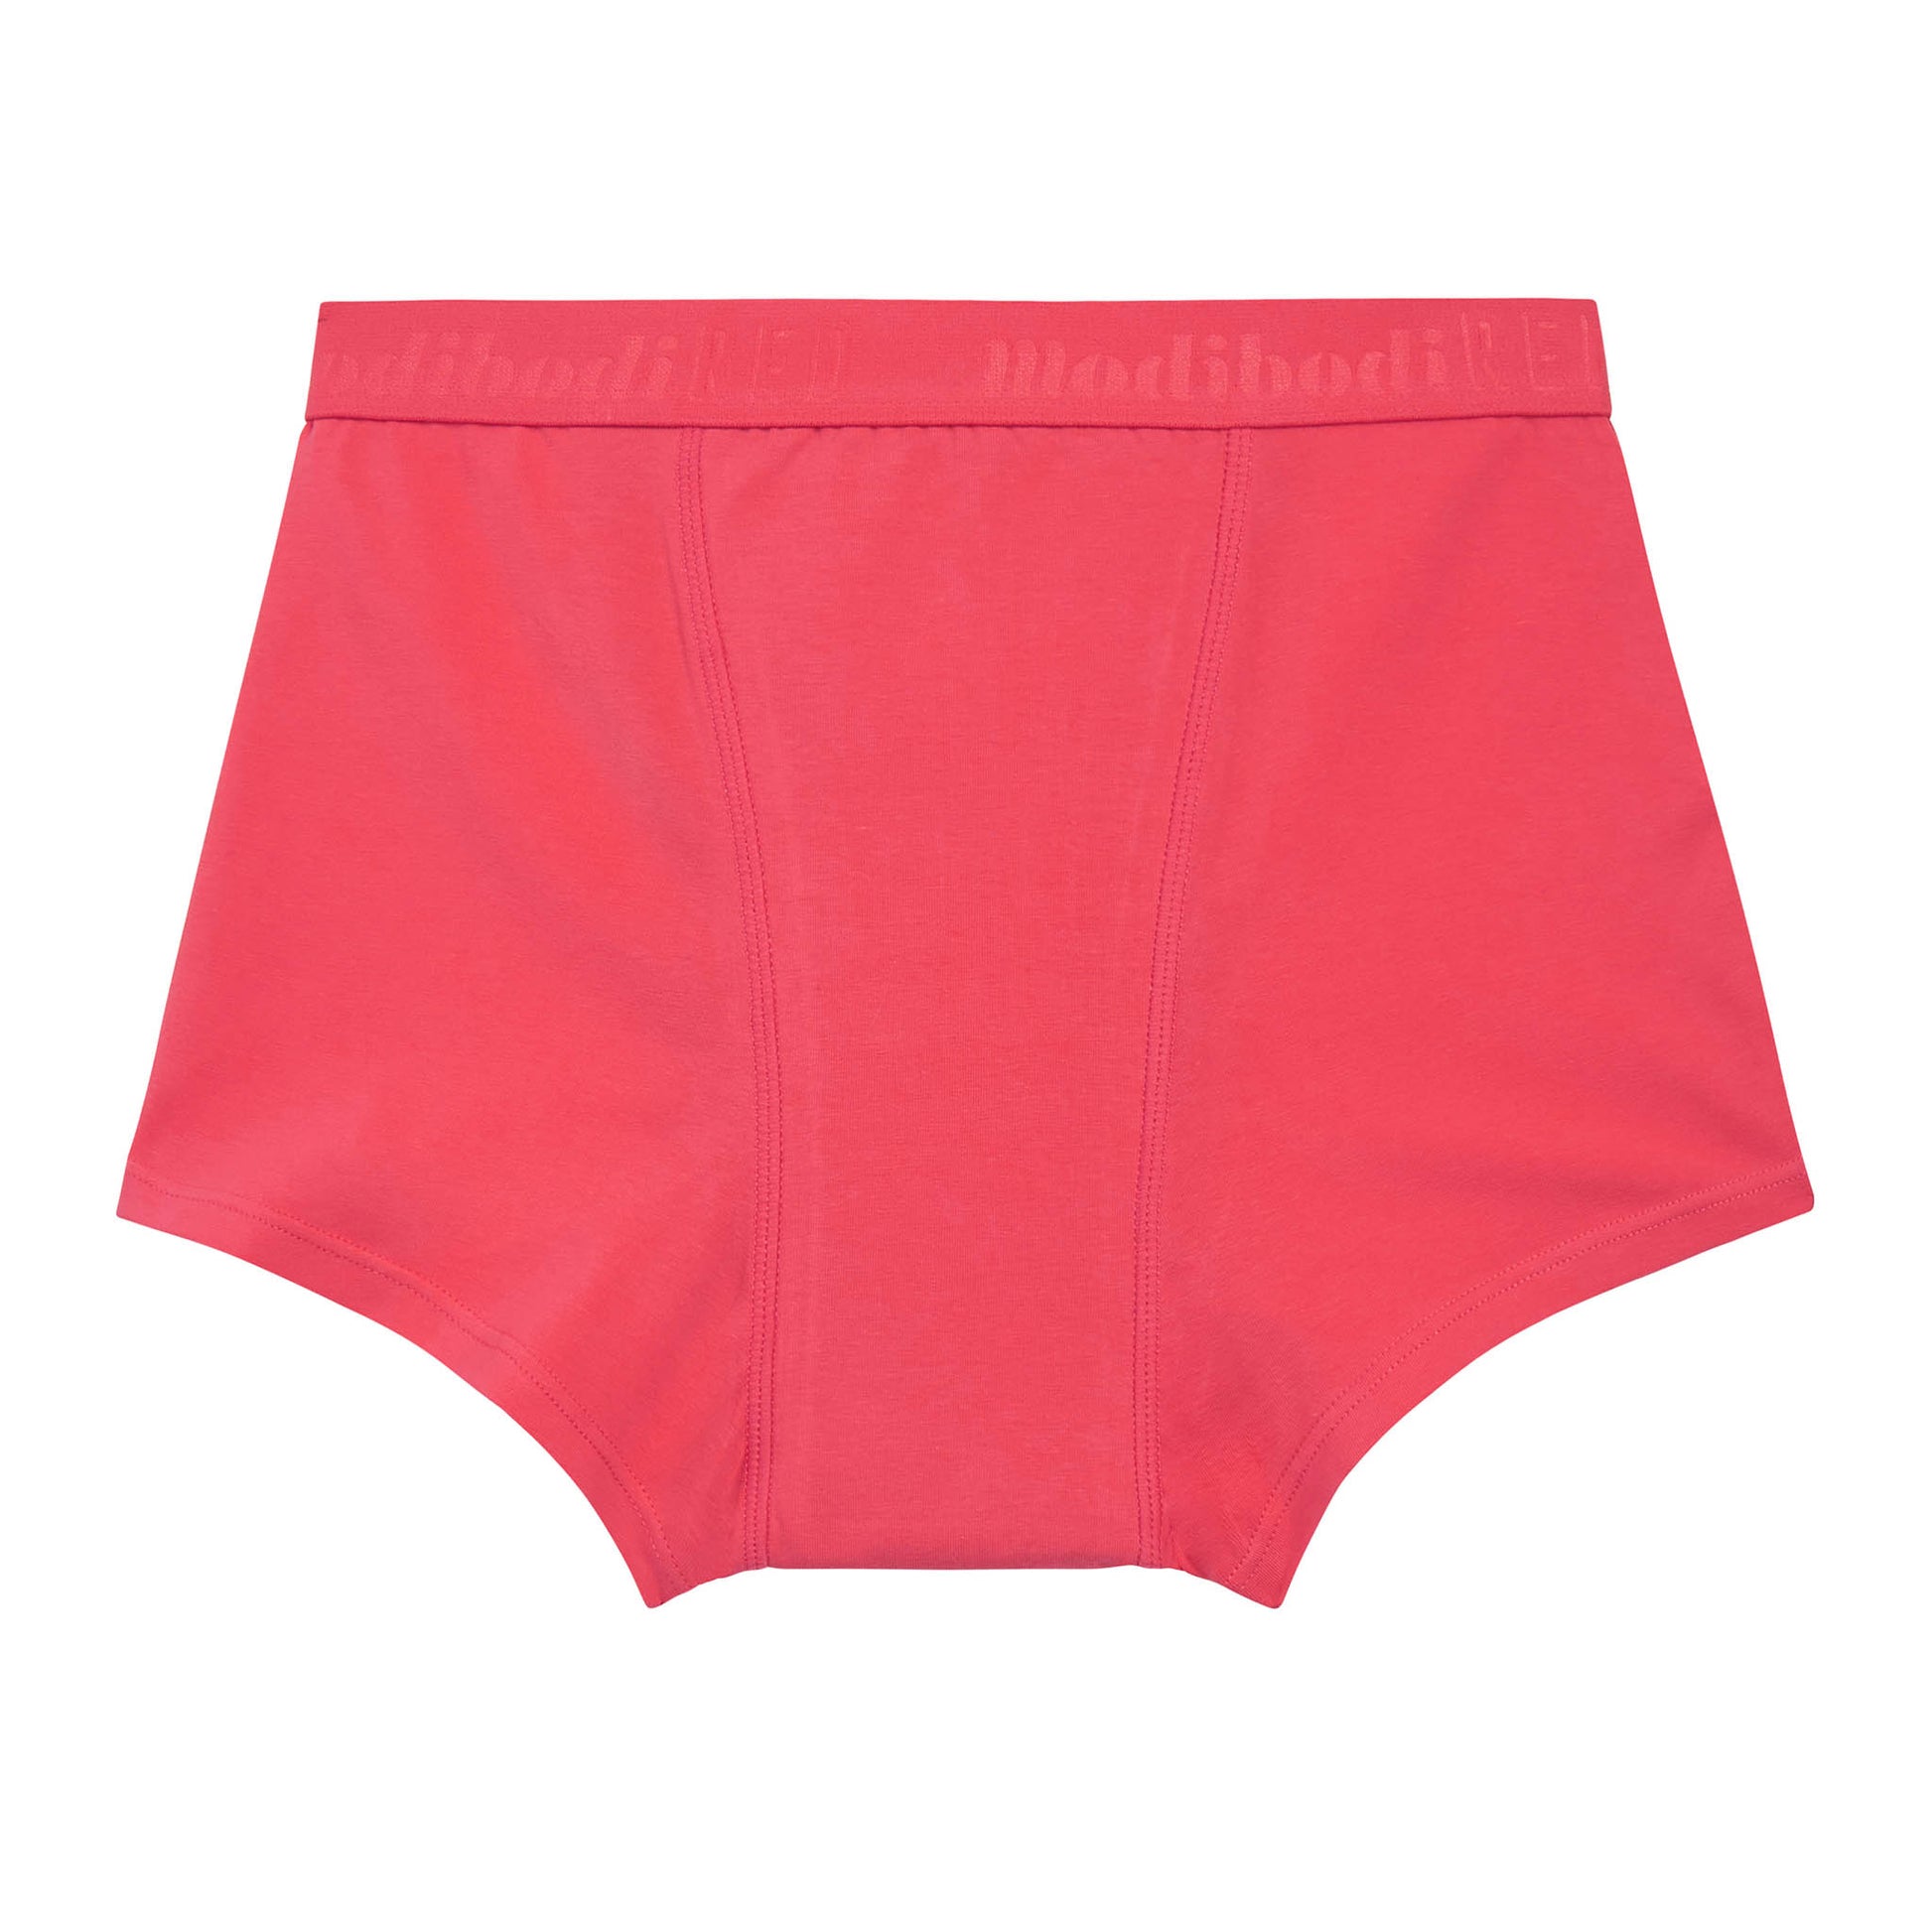  LEAKPROOF2.0 Bikini + Boy Short Period Underwear Bundle, Period  Panties Holds 4-8 Tampons